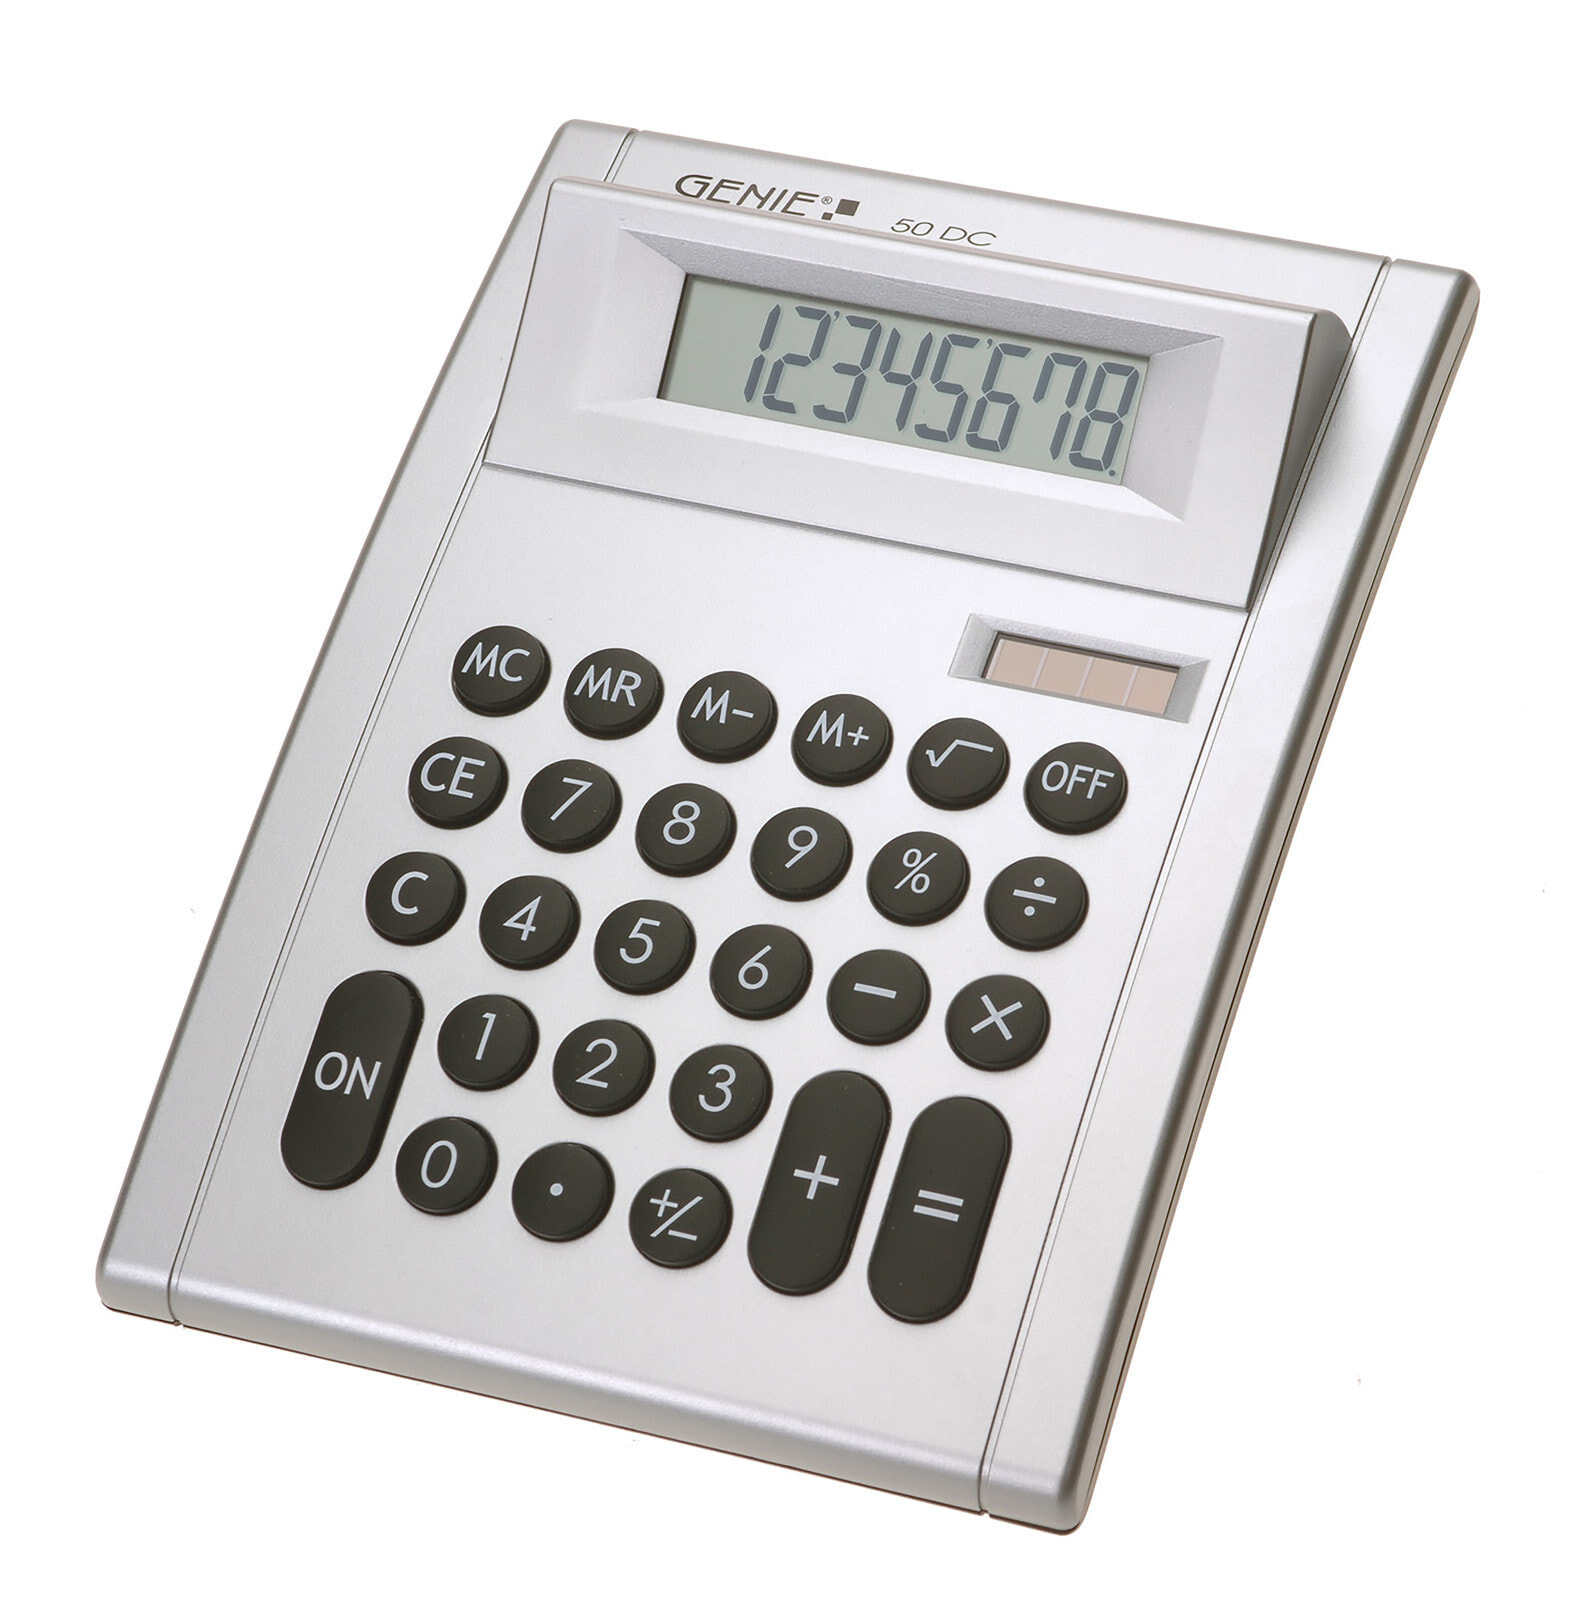 Go calculator. Калькулятор calculator TS-1200tsc. Калькулятор настольный. Часы калькуляторы настольные. Калькулятор школьный.